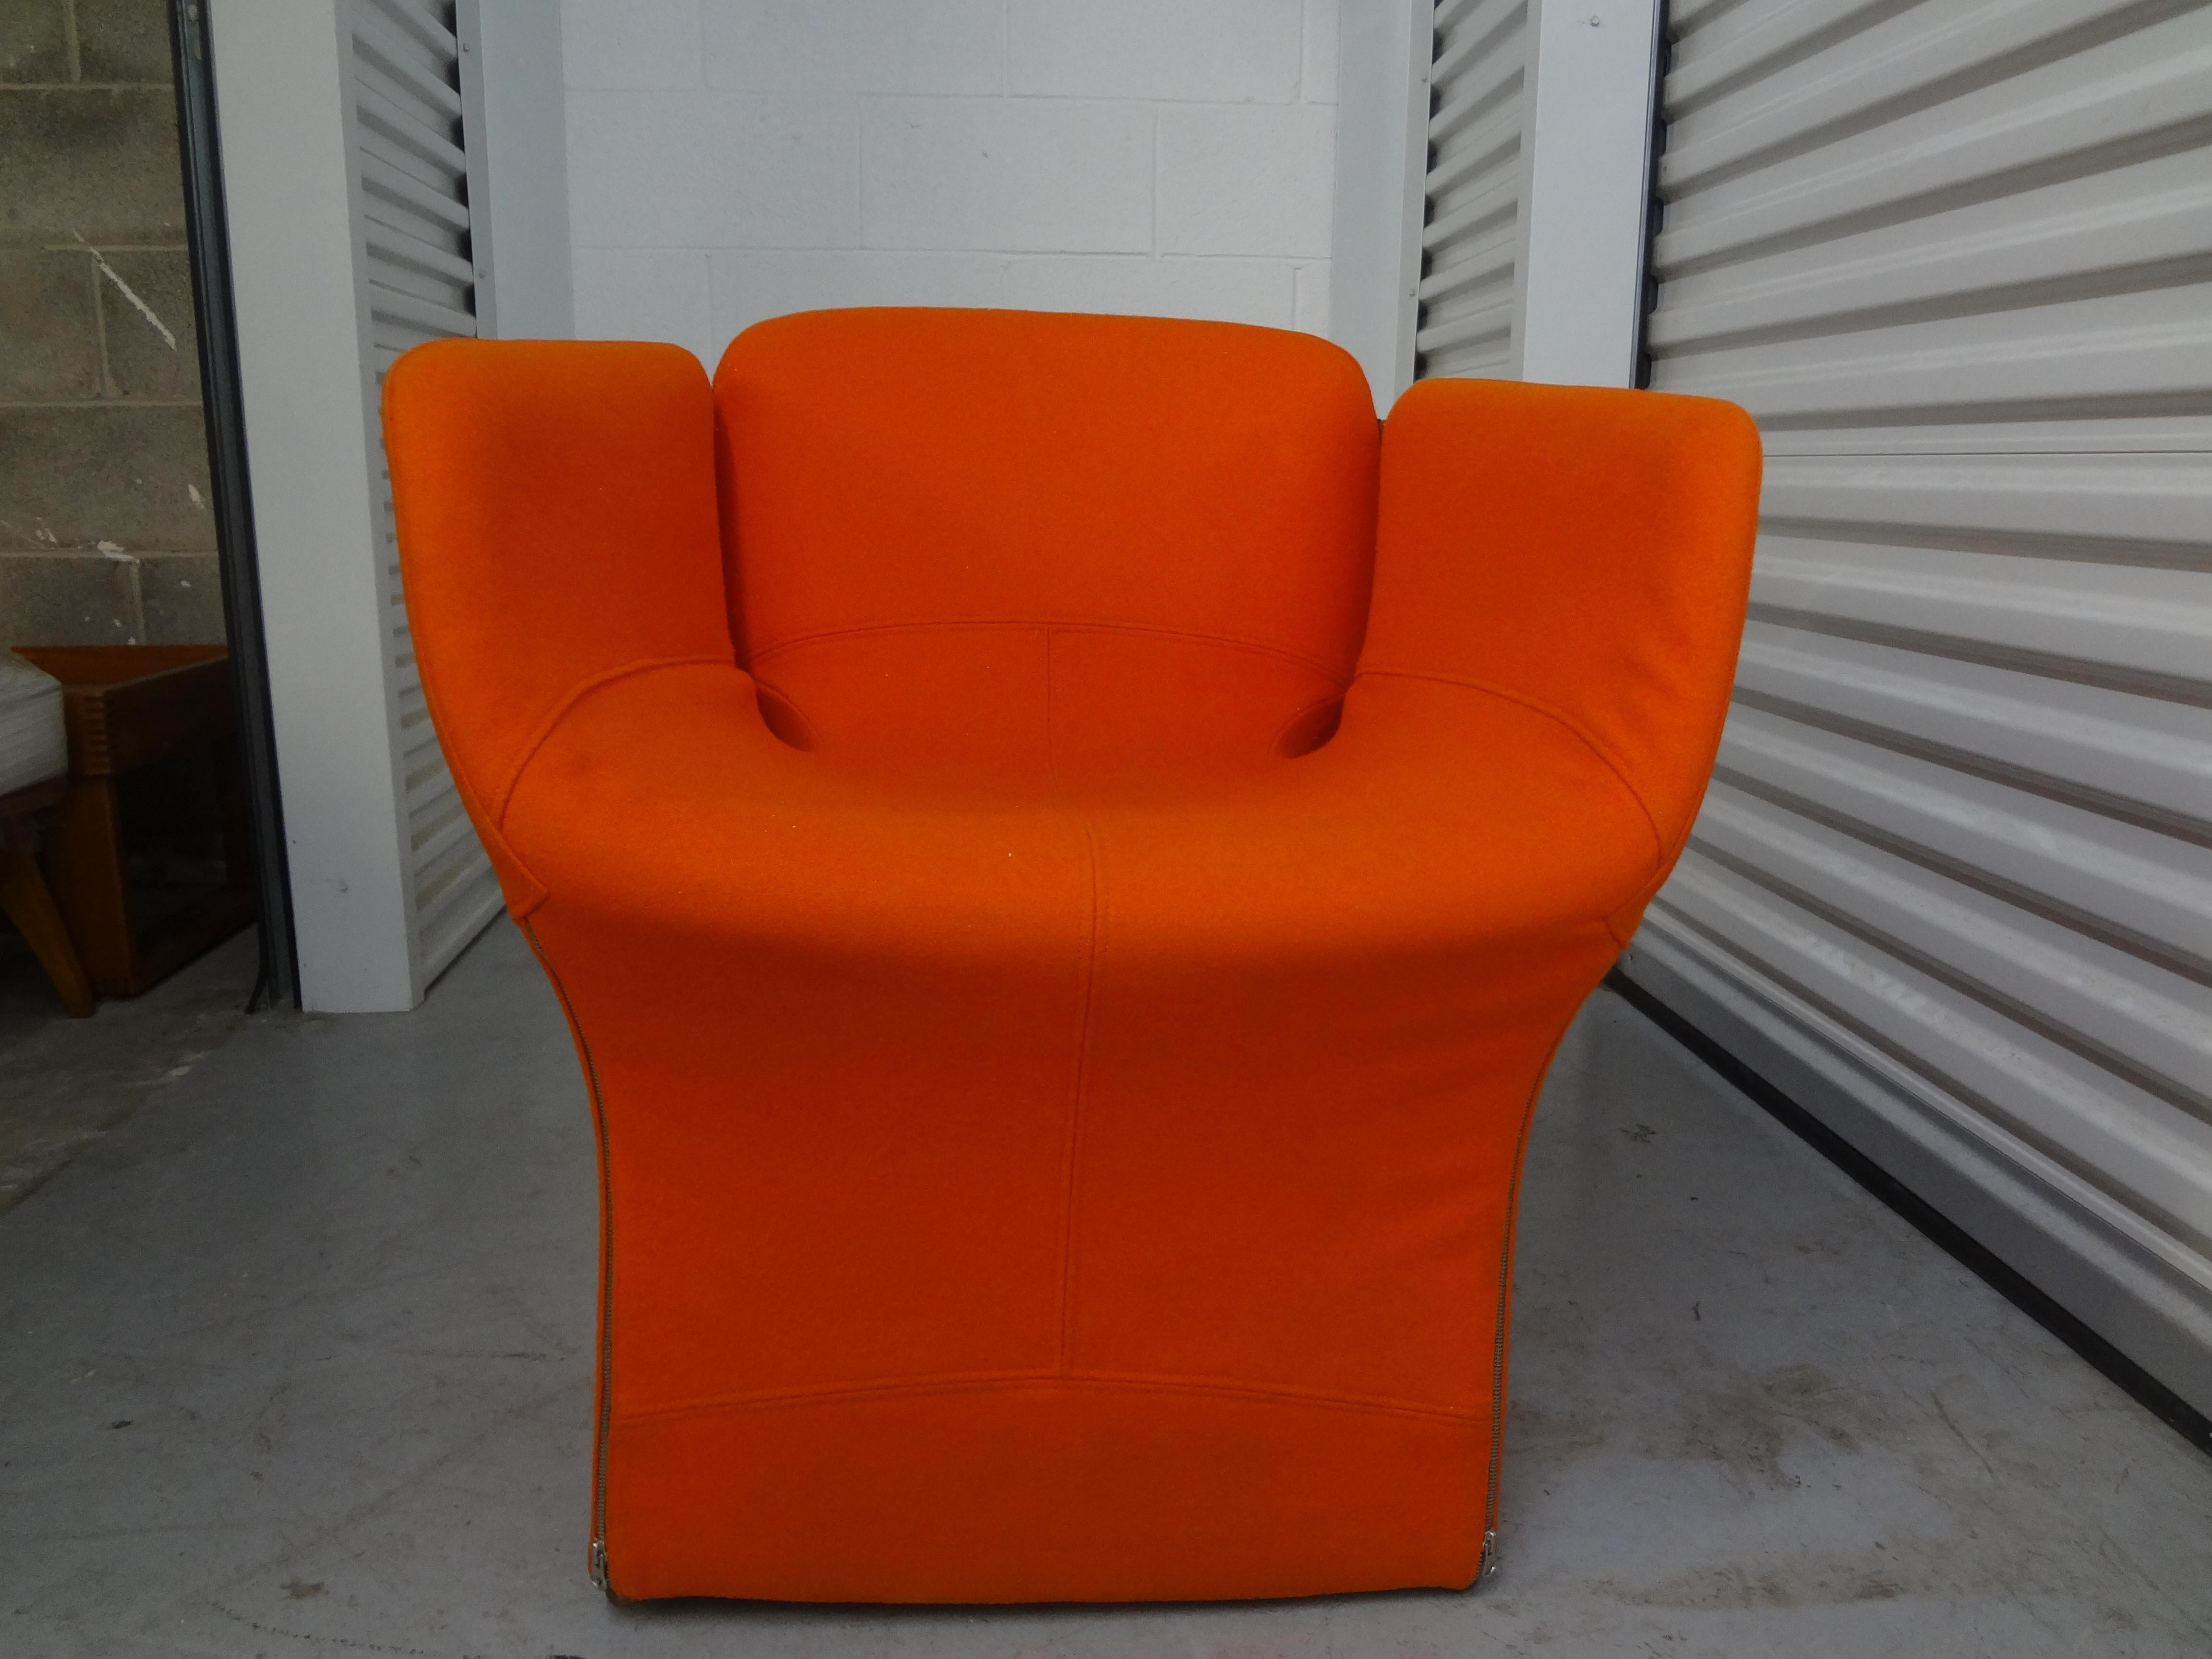 Paire de chaises modernes italiennes par Ron Arad pour Moroso.
Cette paire de chaises modernes italiennes, chaises club, chaises de salon ou chaises d'appoint, a été conçue par Ron Arad pour Moroso. Ces chaises confortables ont conservé leur